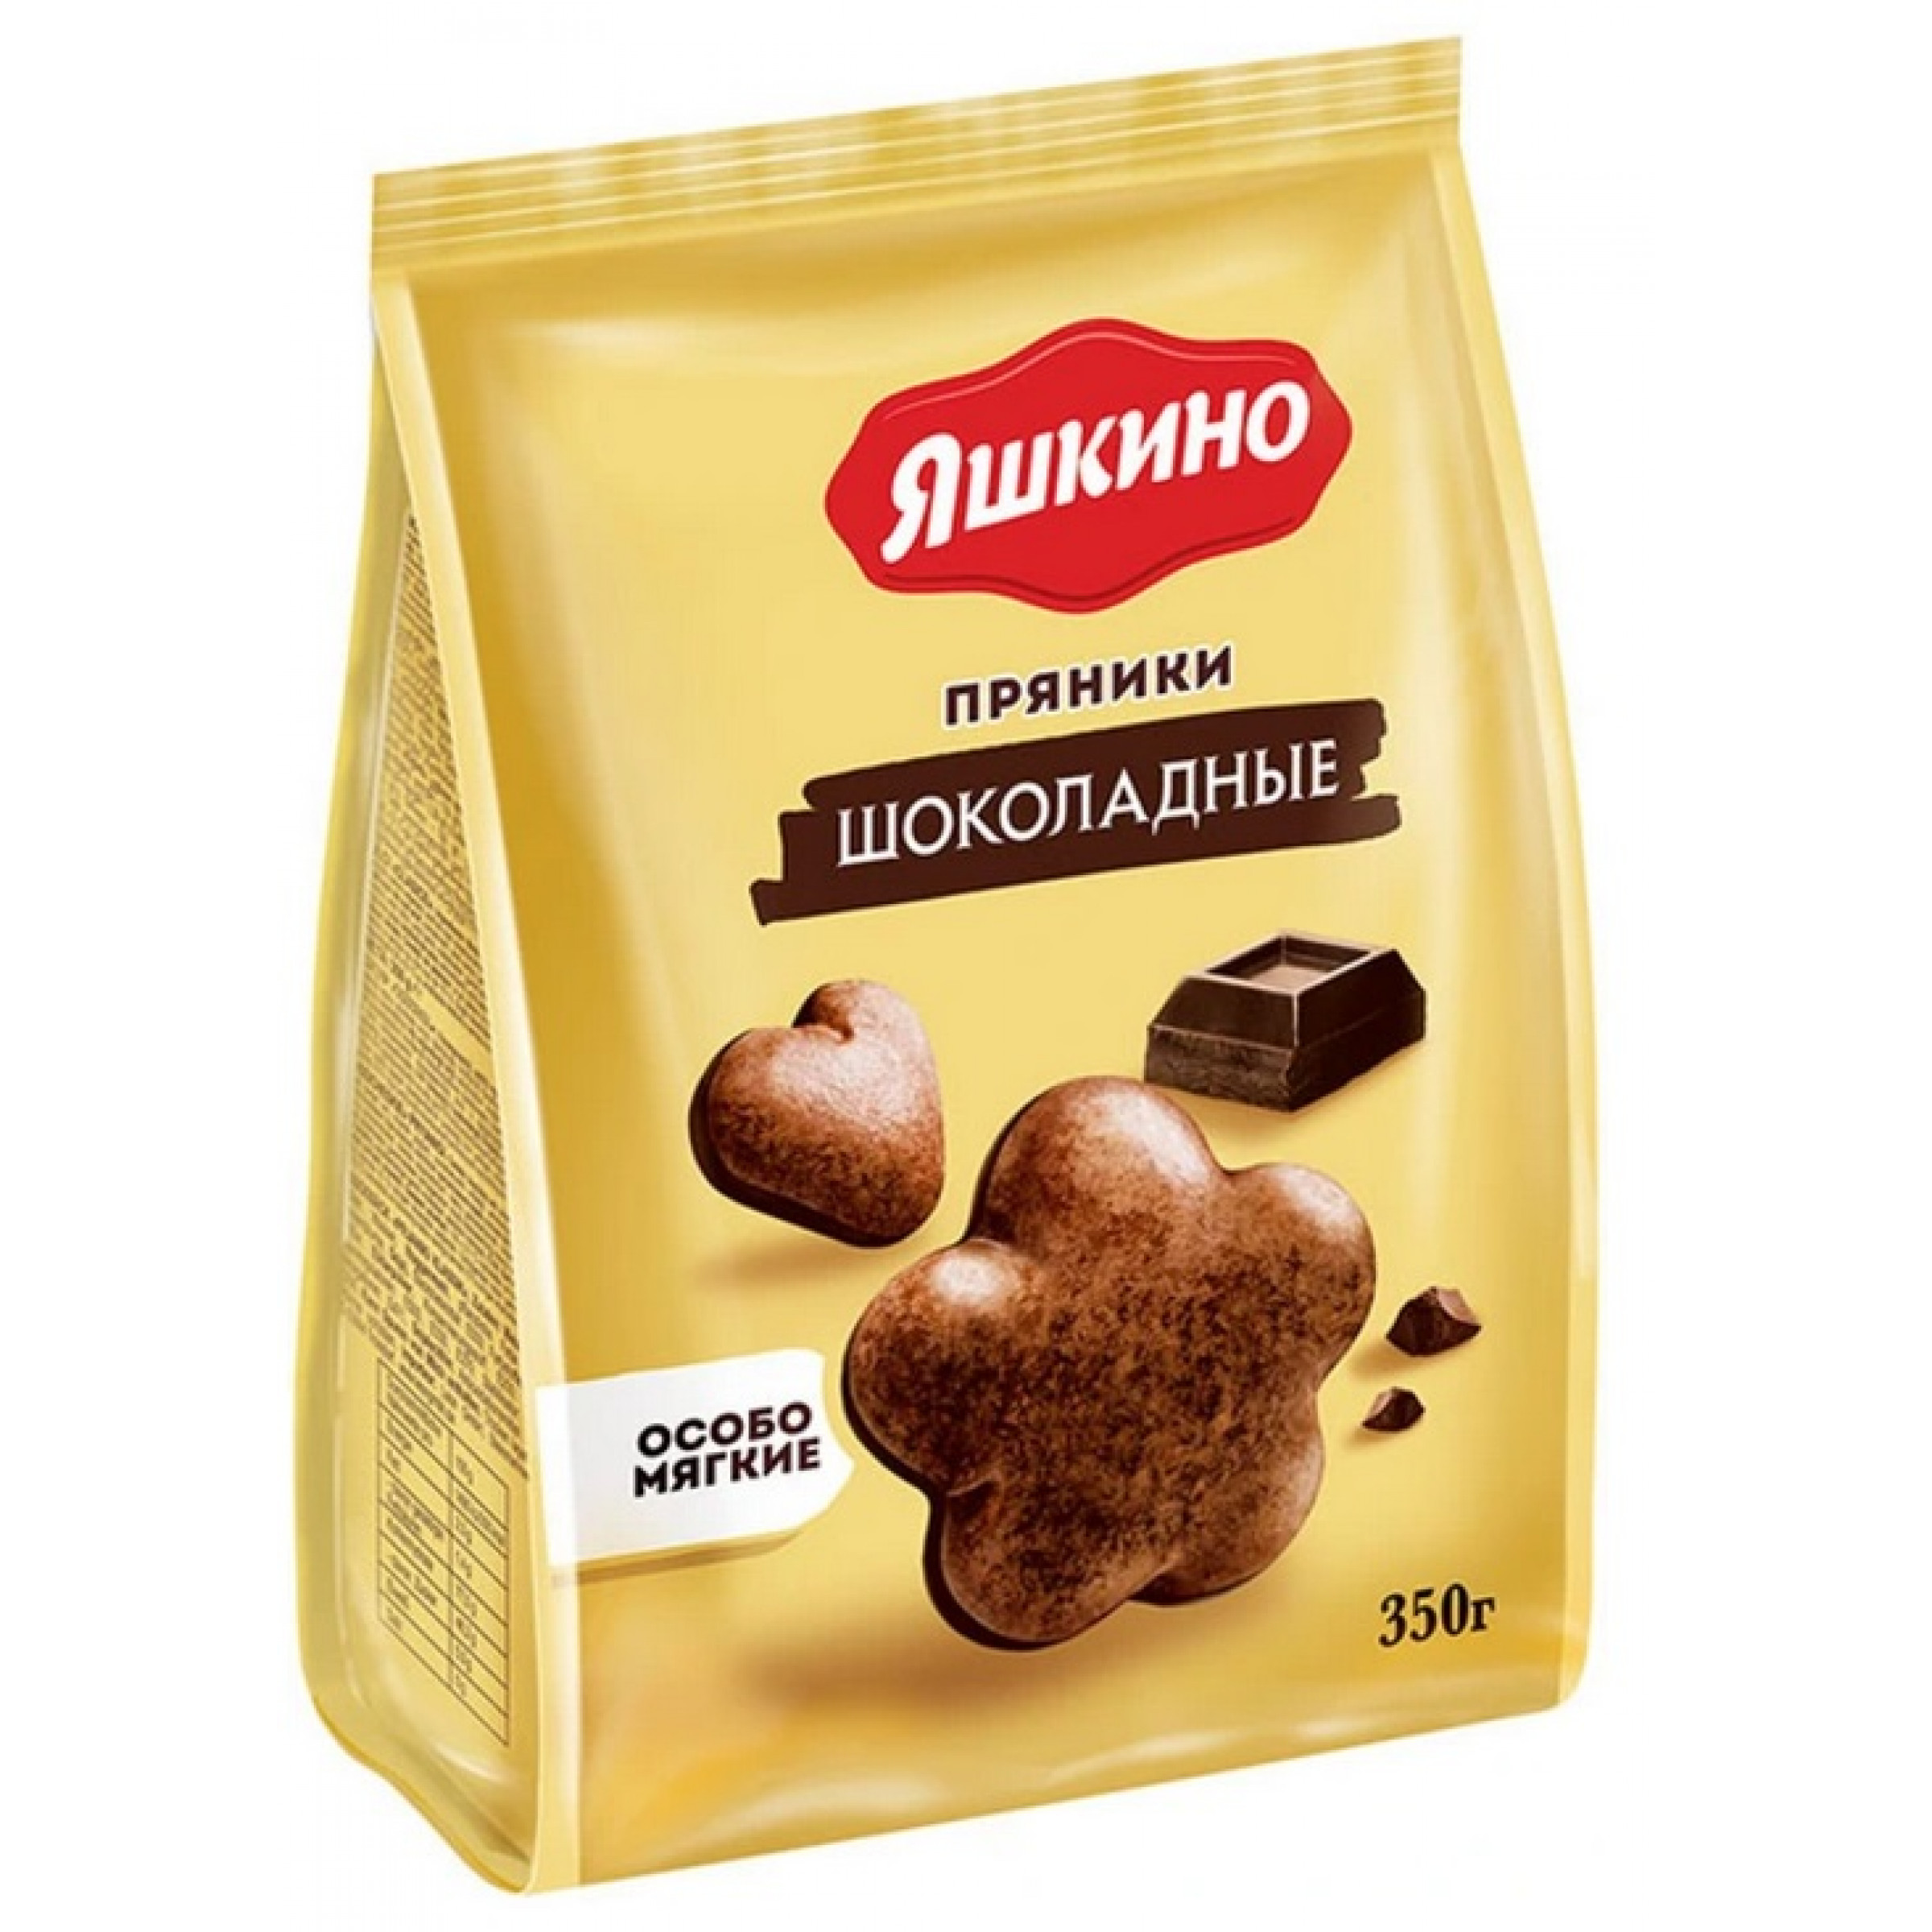 Пряники сырцовые Яшкино шоколадные 350 г